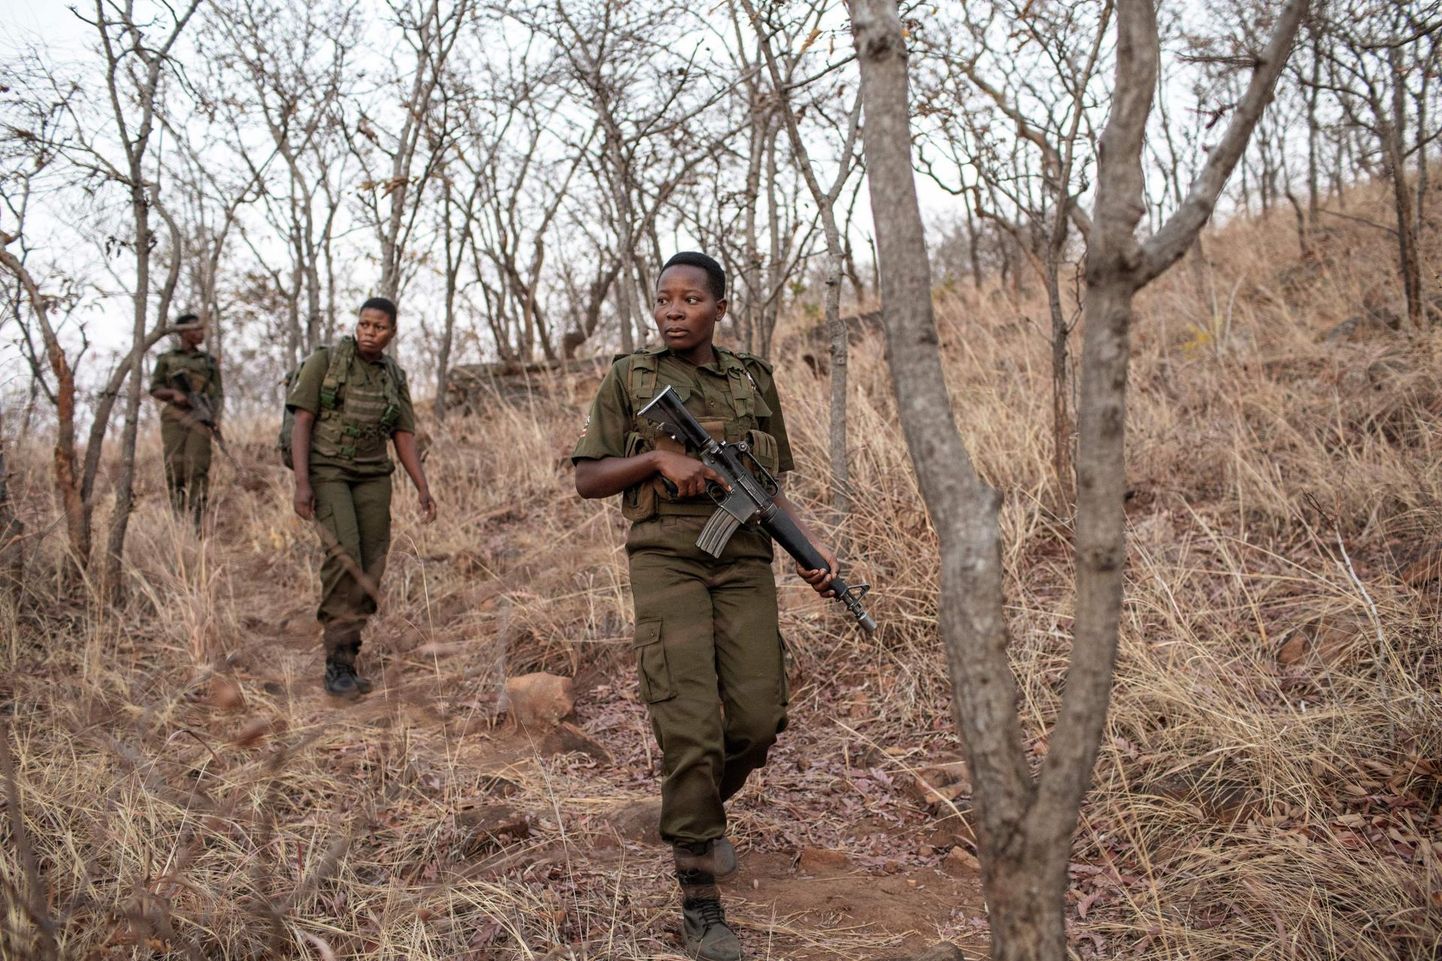 Akashinga pargivahid demonstreerivad oma patrullimisoskusi Phundundu baaslaagris Zimbabwes. Kuigi rühma kuuluvad naised kannavad relva, on nende esmaseks ülesandeks kaitsta loomi salaküttide eest koostöös kohalike elanikega.